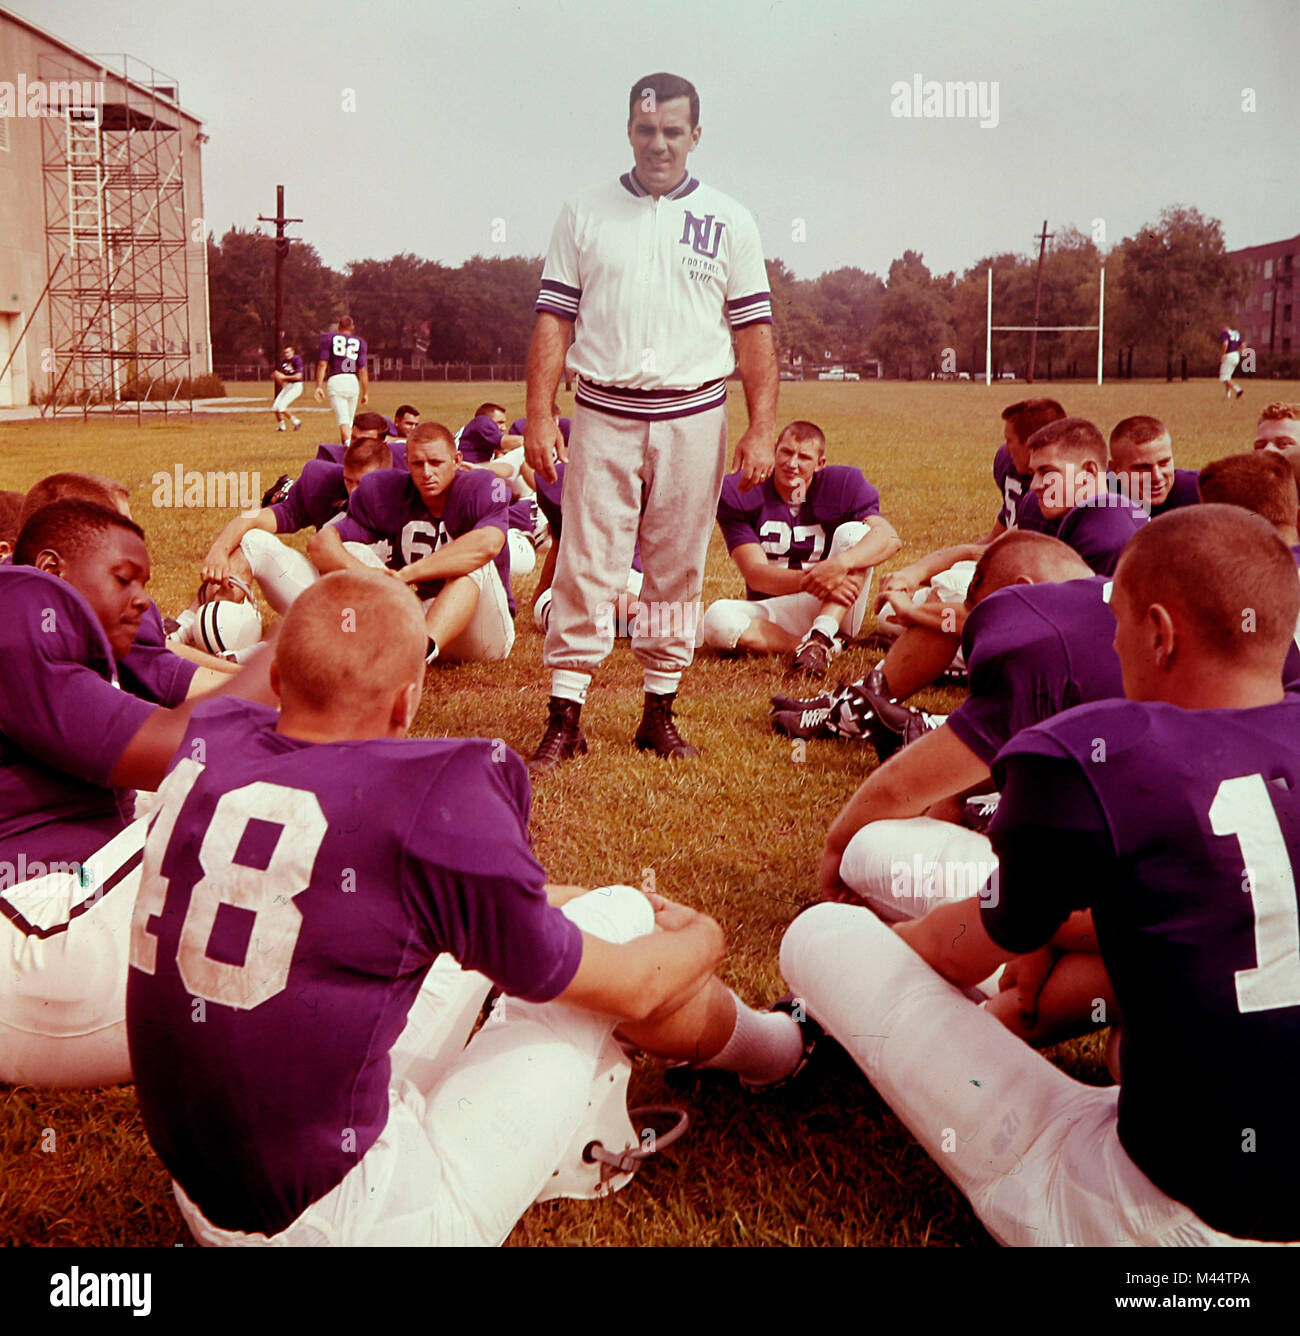 Ara Parseghian während seiner Amtszeit als Fußball-Trainer der Northwestern University in Evanston, IL, Ca. 1961. Stockfoto